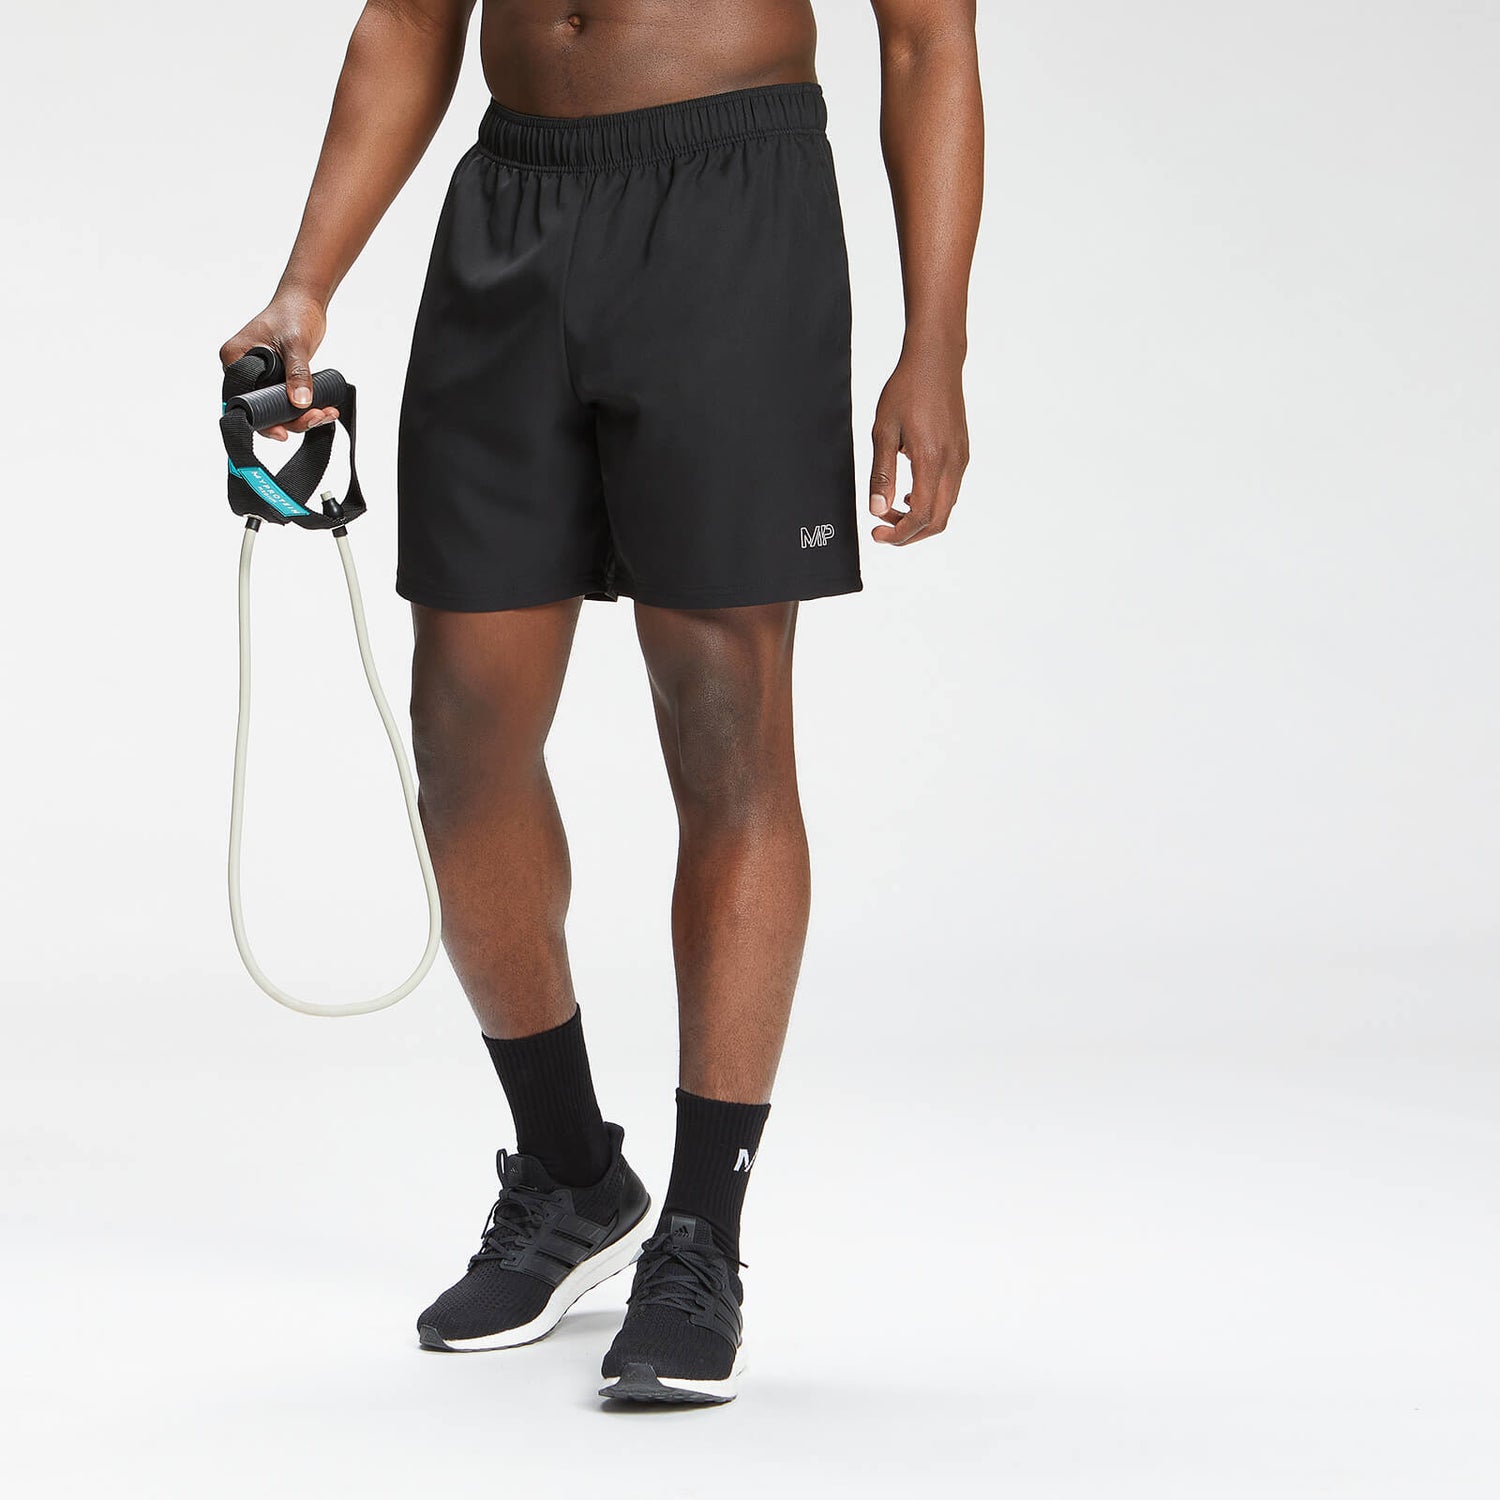 Pantalón corto de entrenamiento con estampado de marca repetido para hombre de MP - Negro